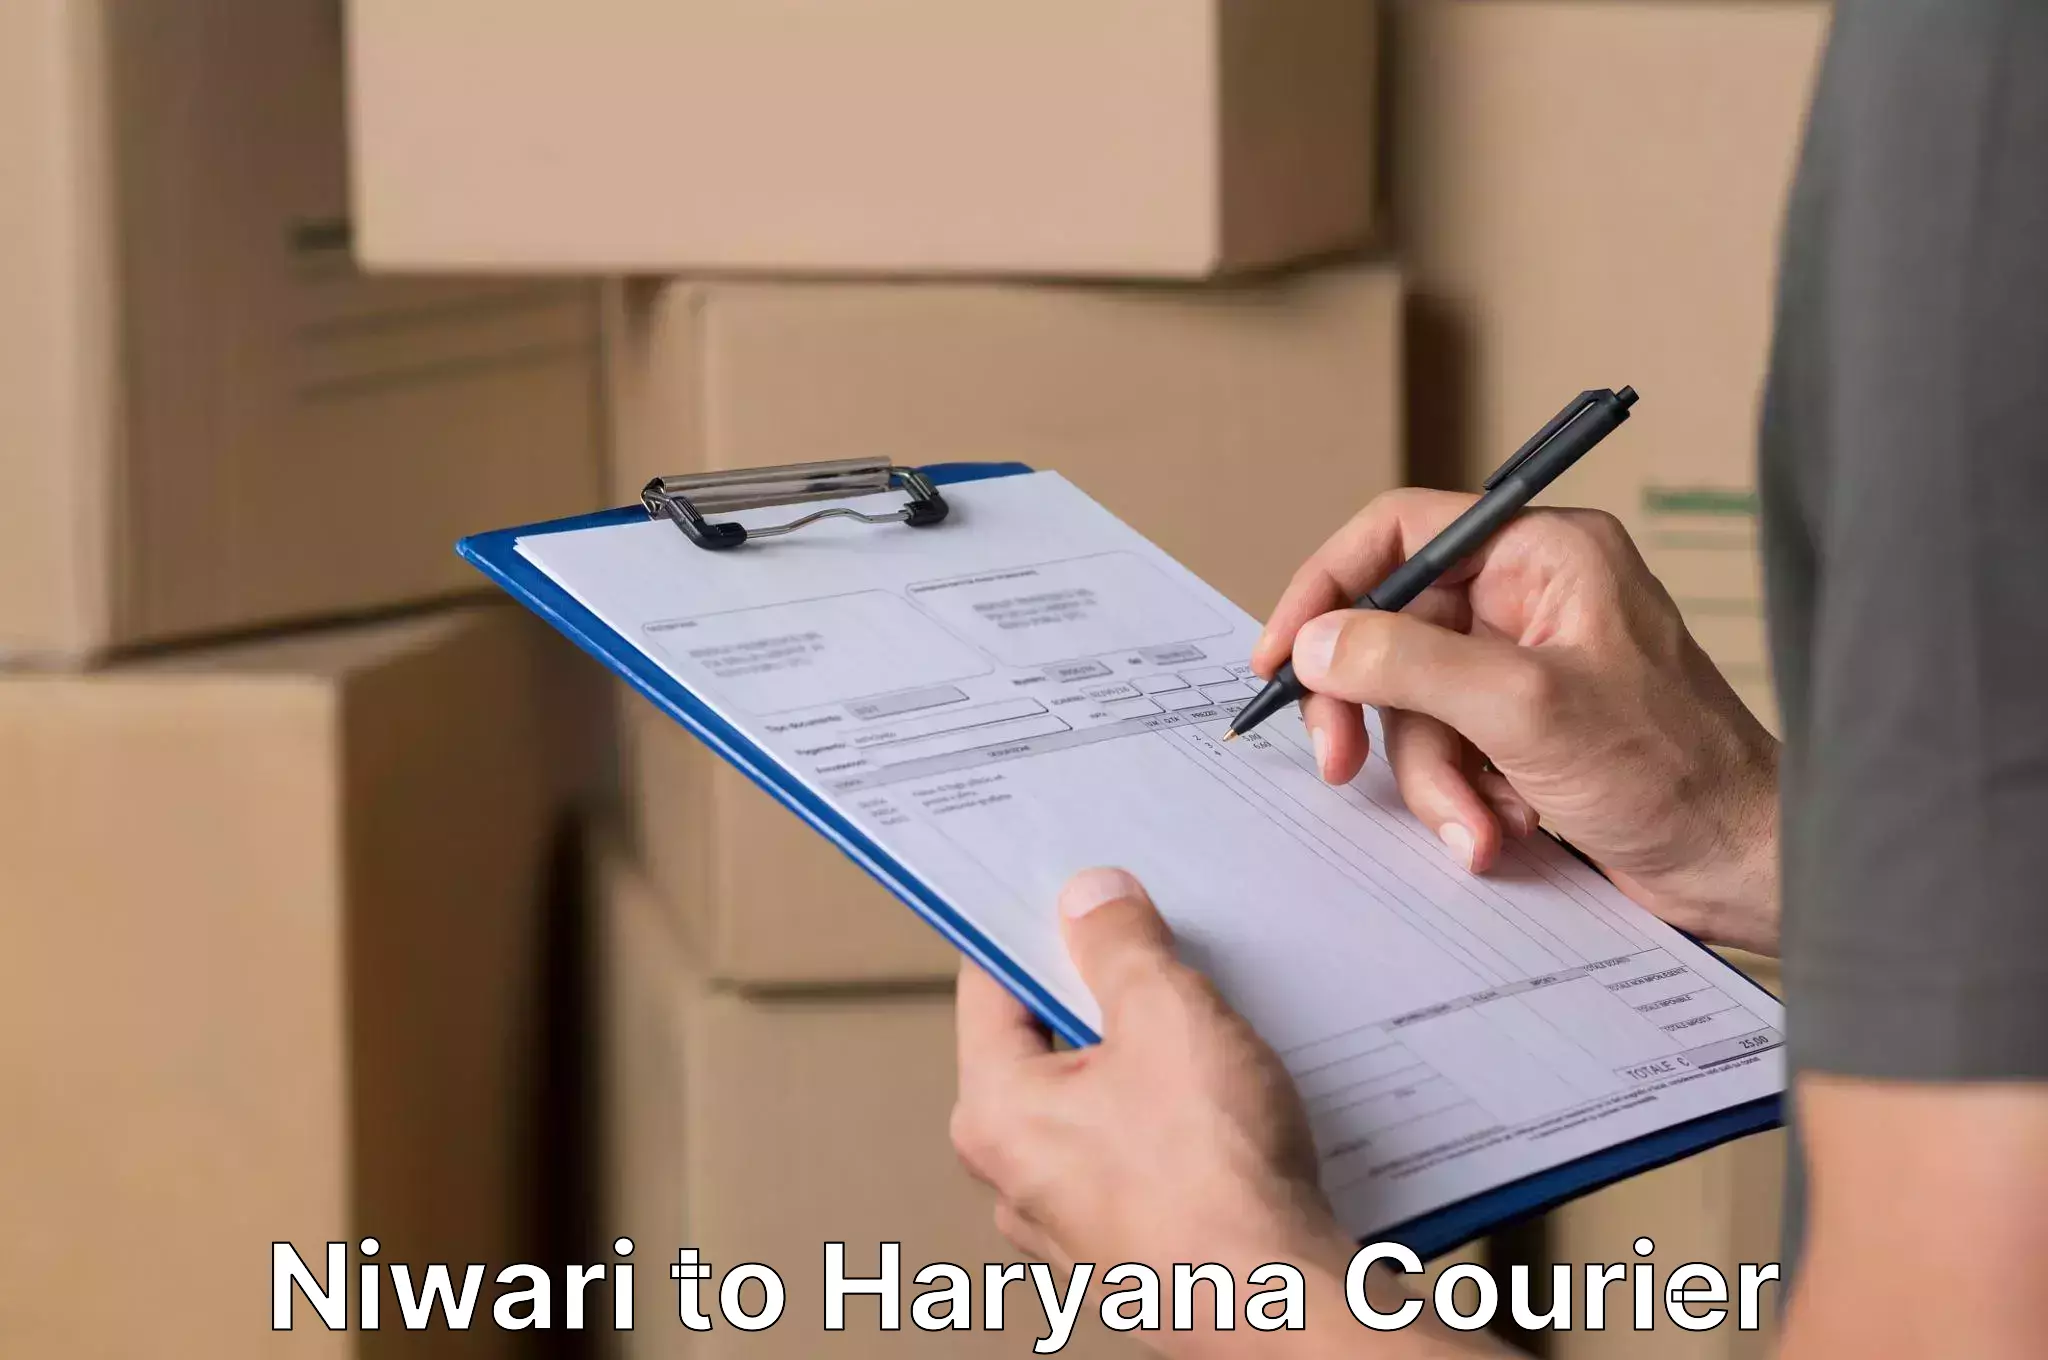 Household moving and handling Niwari to Hansi